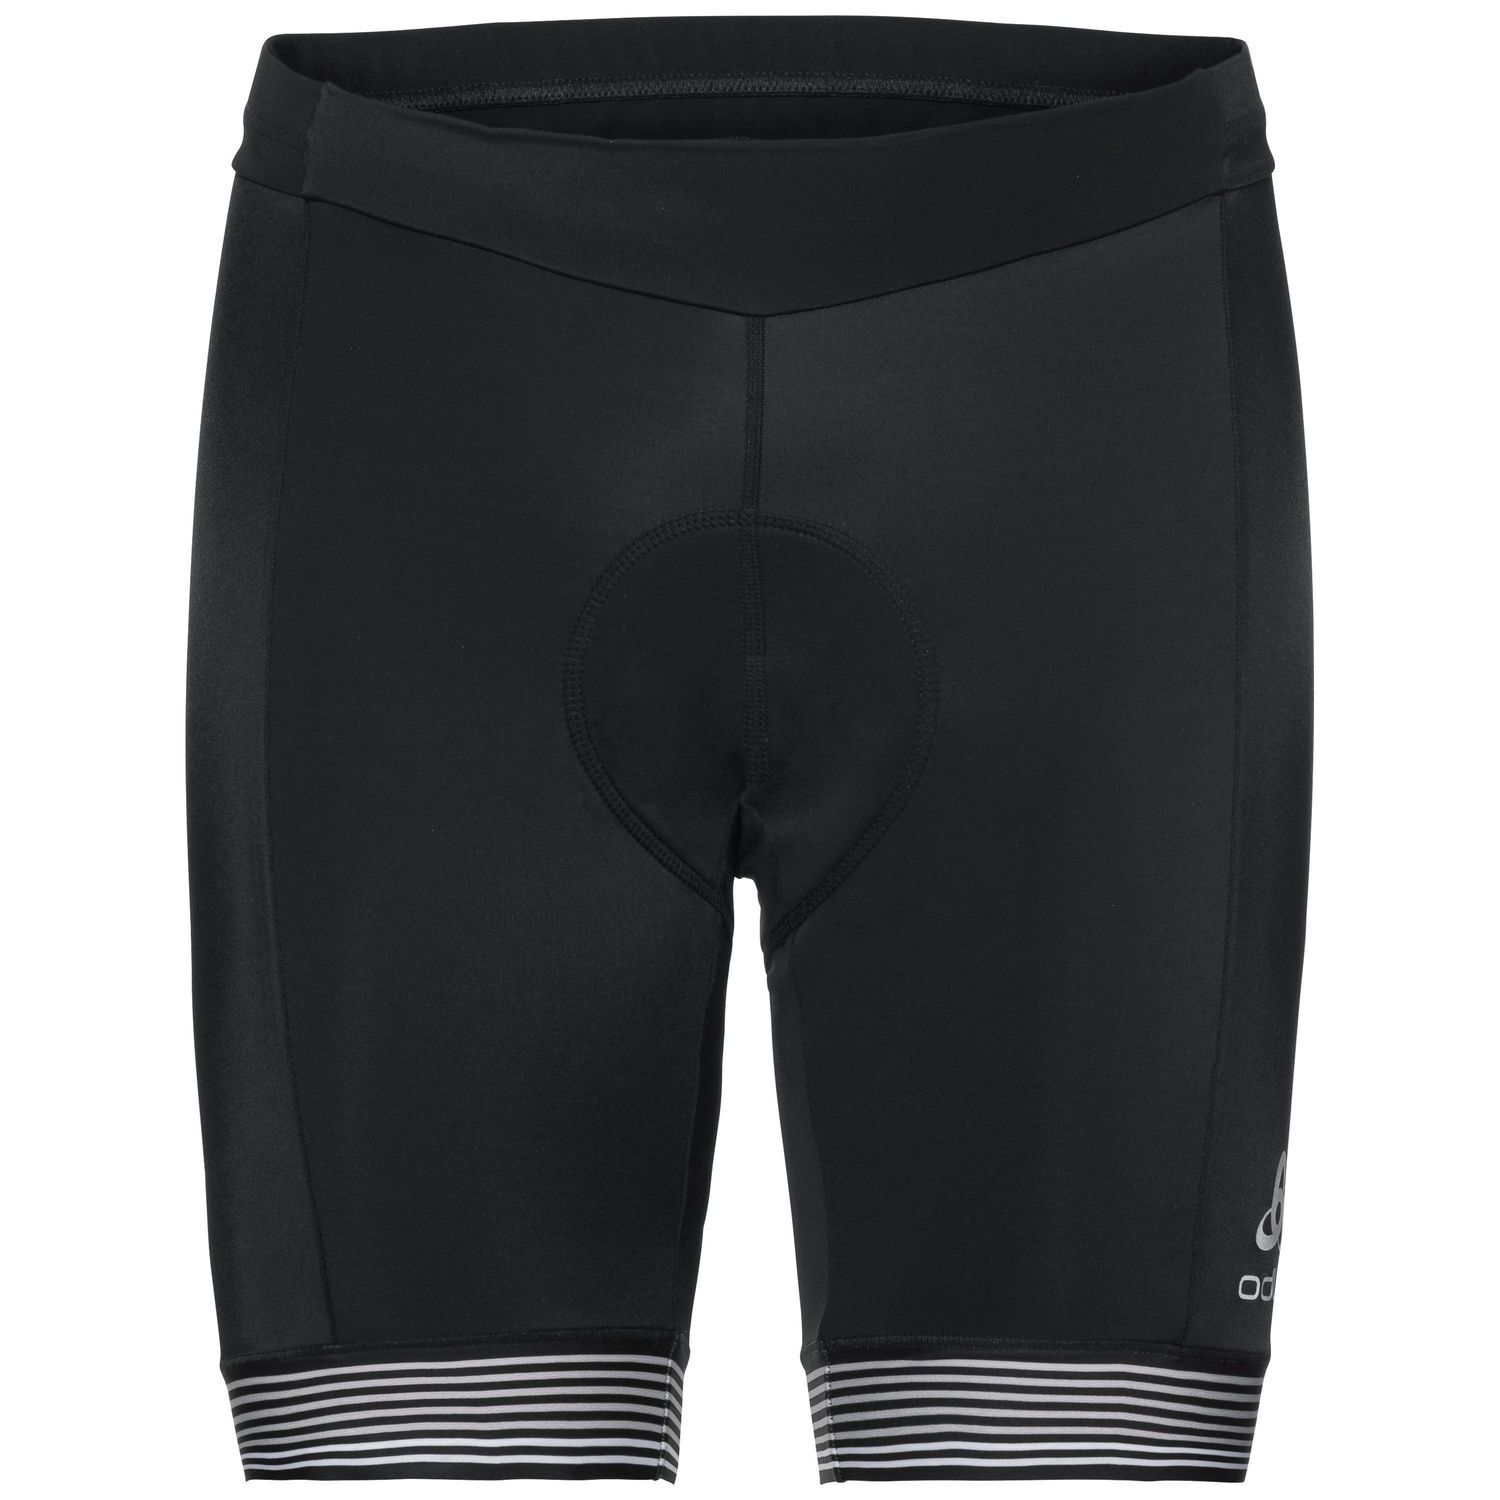 Odlo Zeroweight - Cycling shorts - Men's